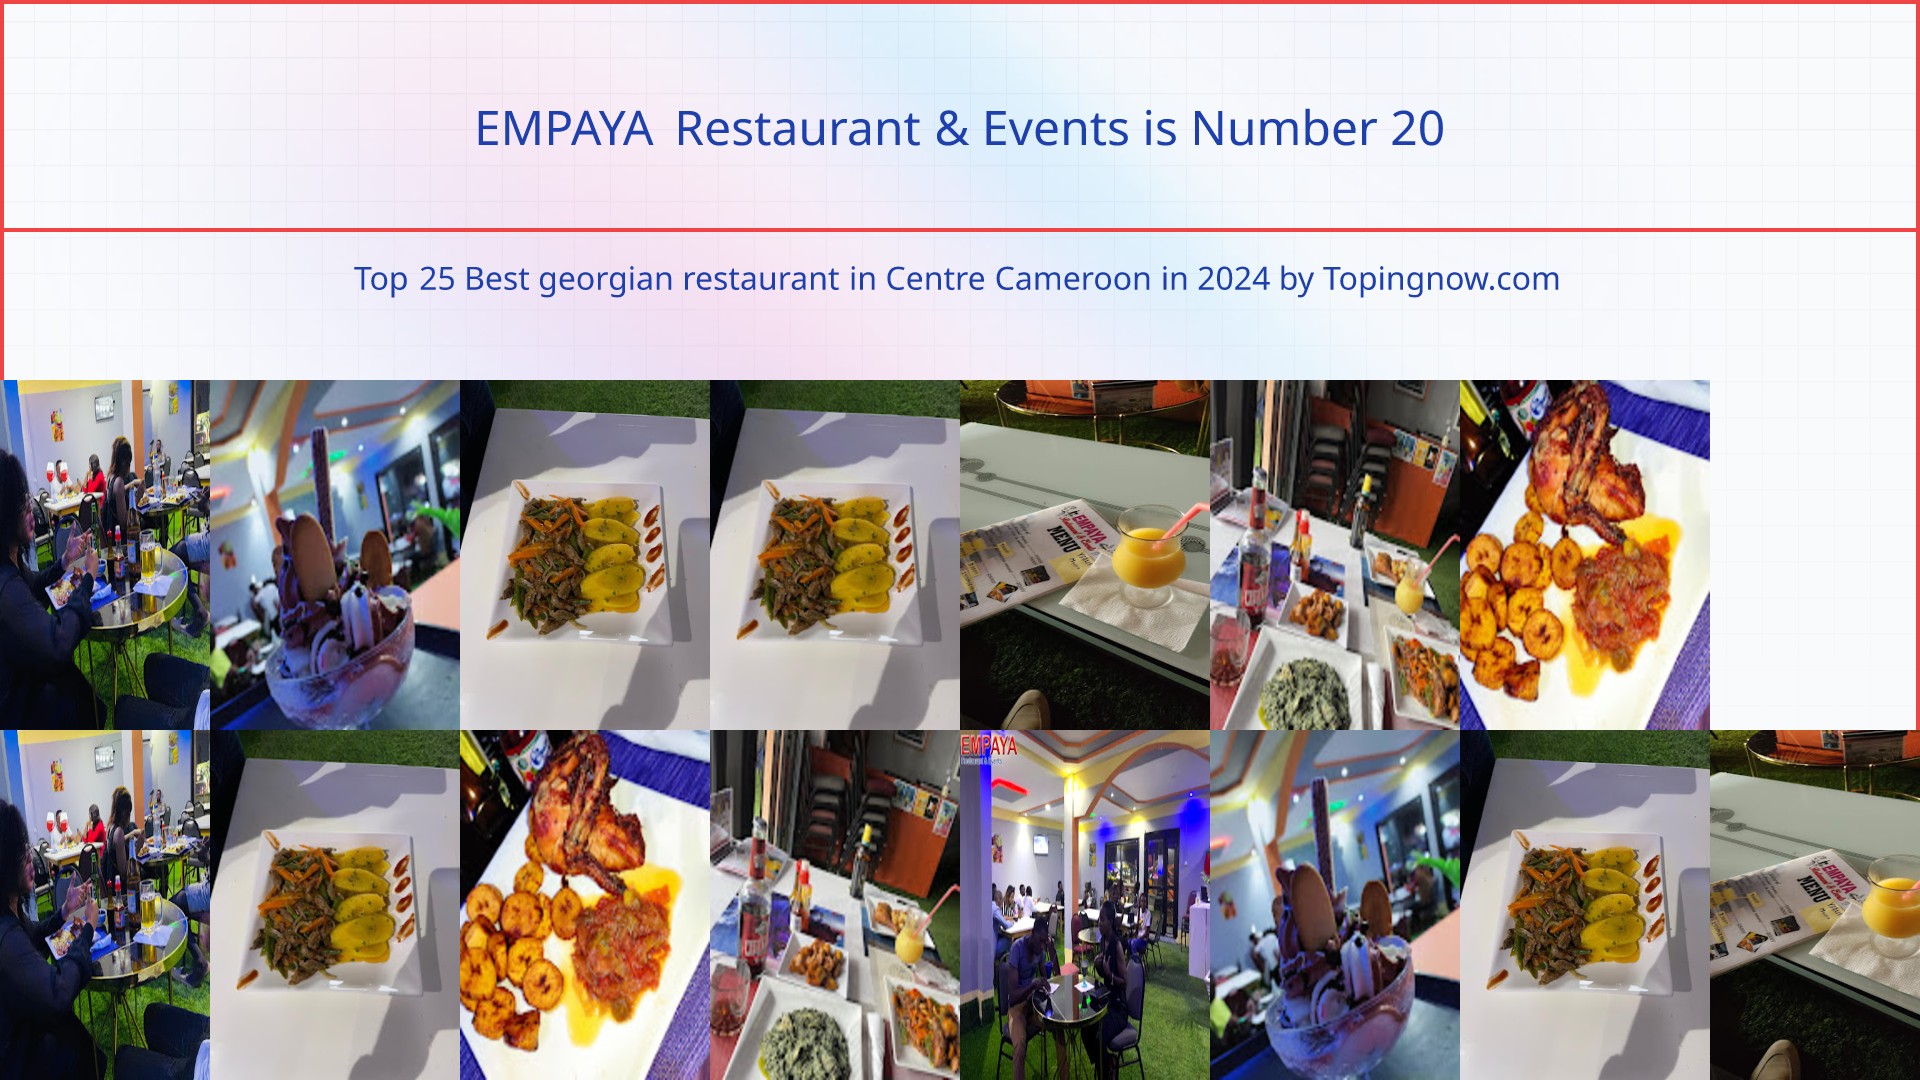 EMPAYA Restaurant & Events: Top 25 Best georgian restaurant in Centre Cameroon in 2024